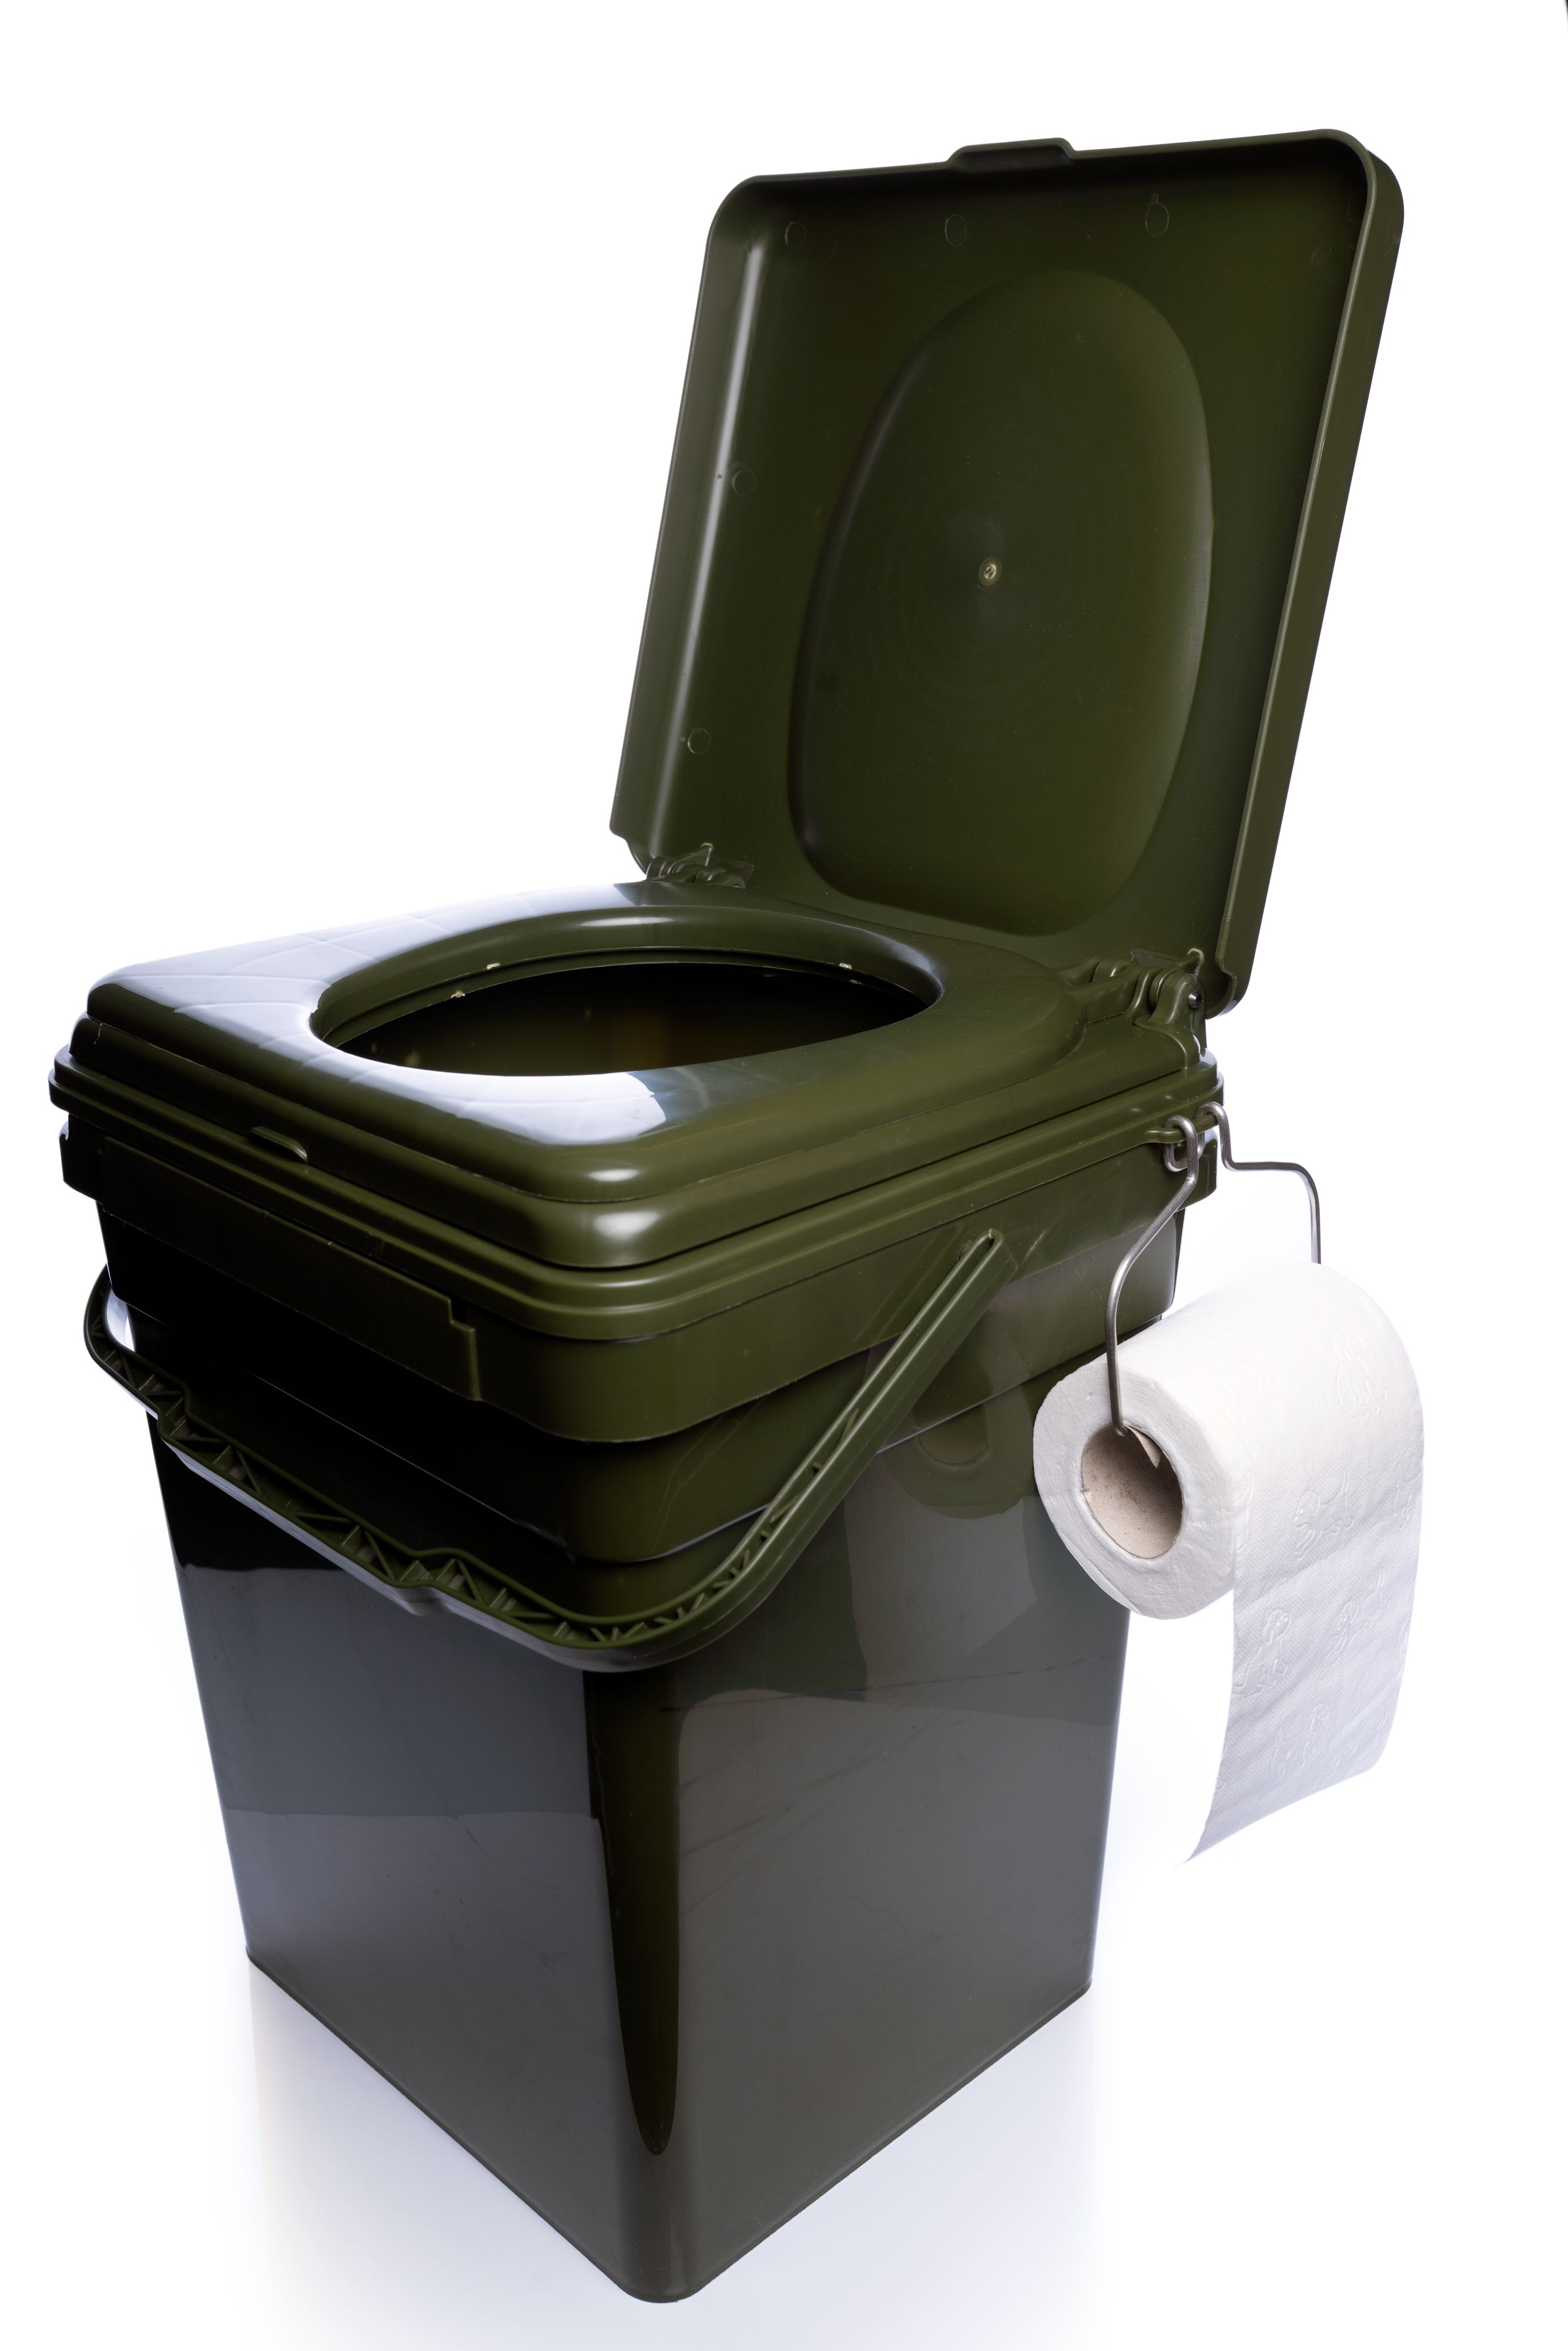 RIDGEMONKEY COZEE TOILET SEAT - The Bait Bucket